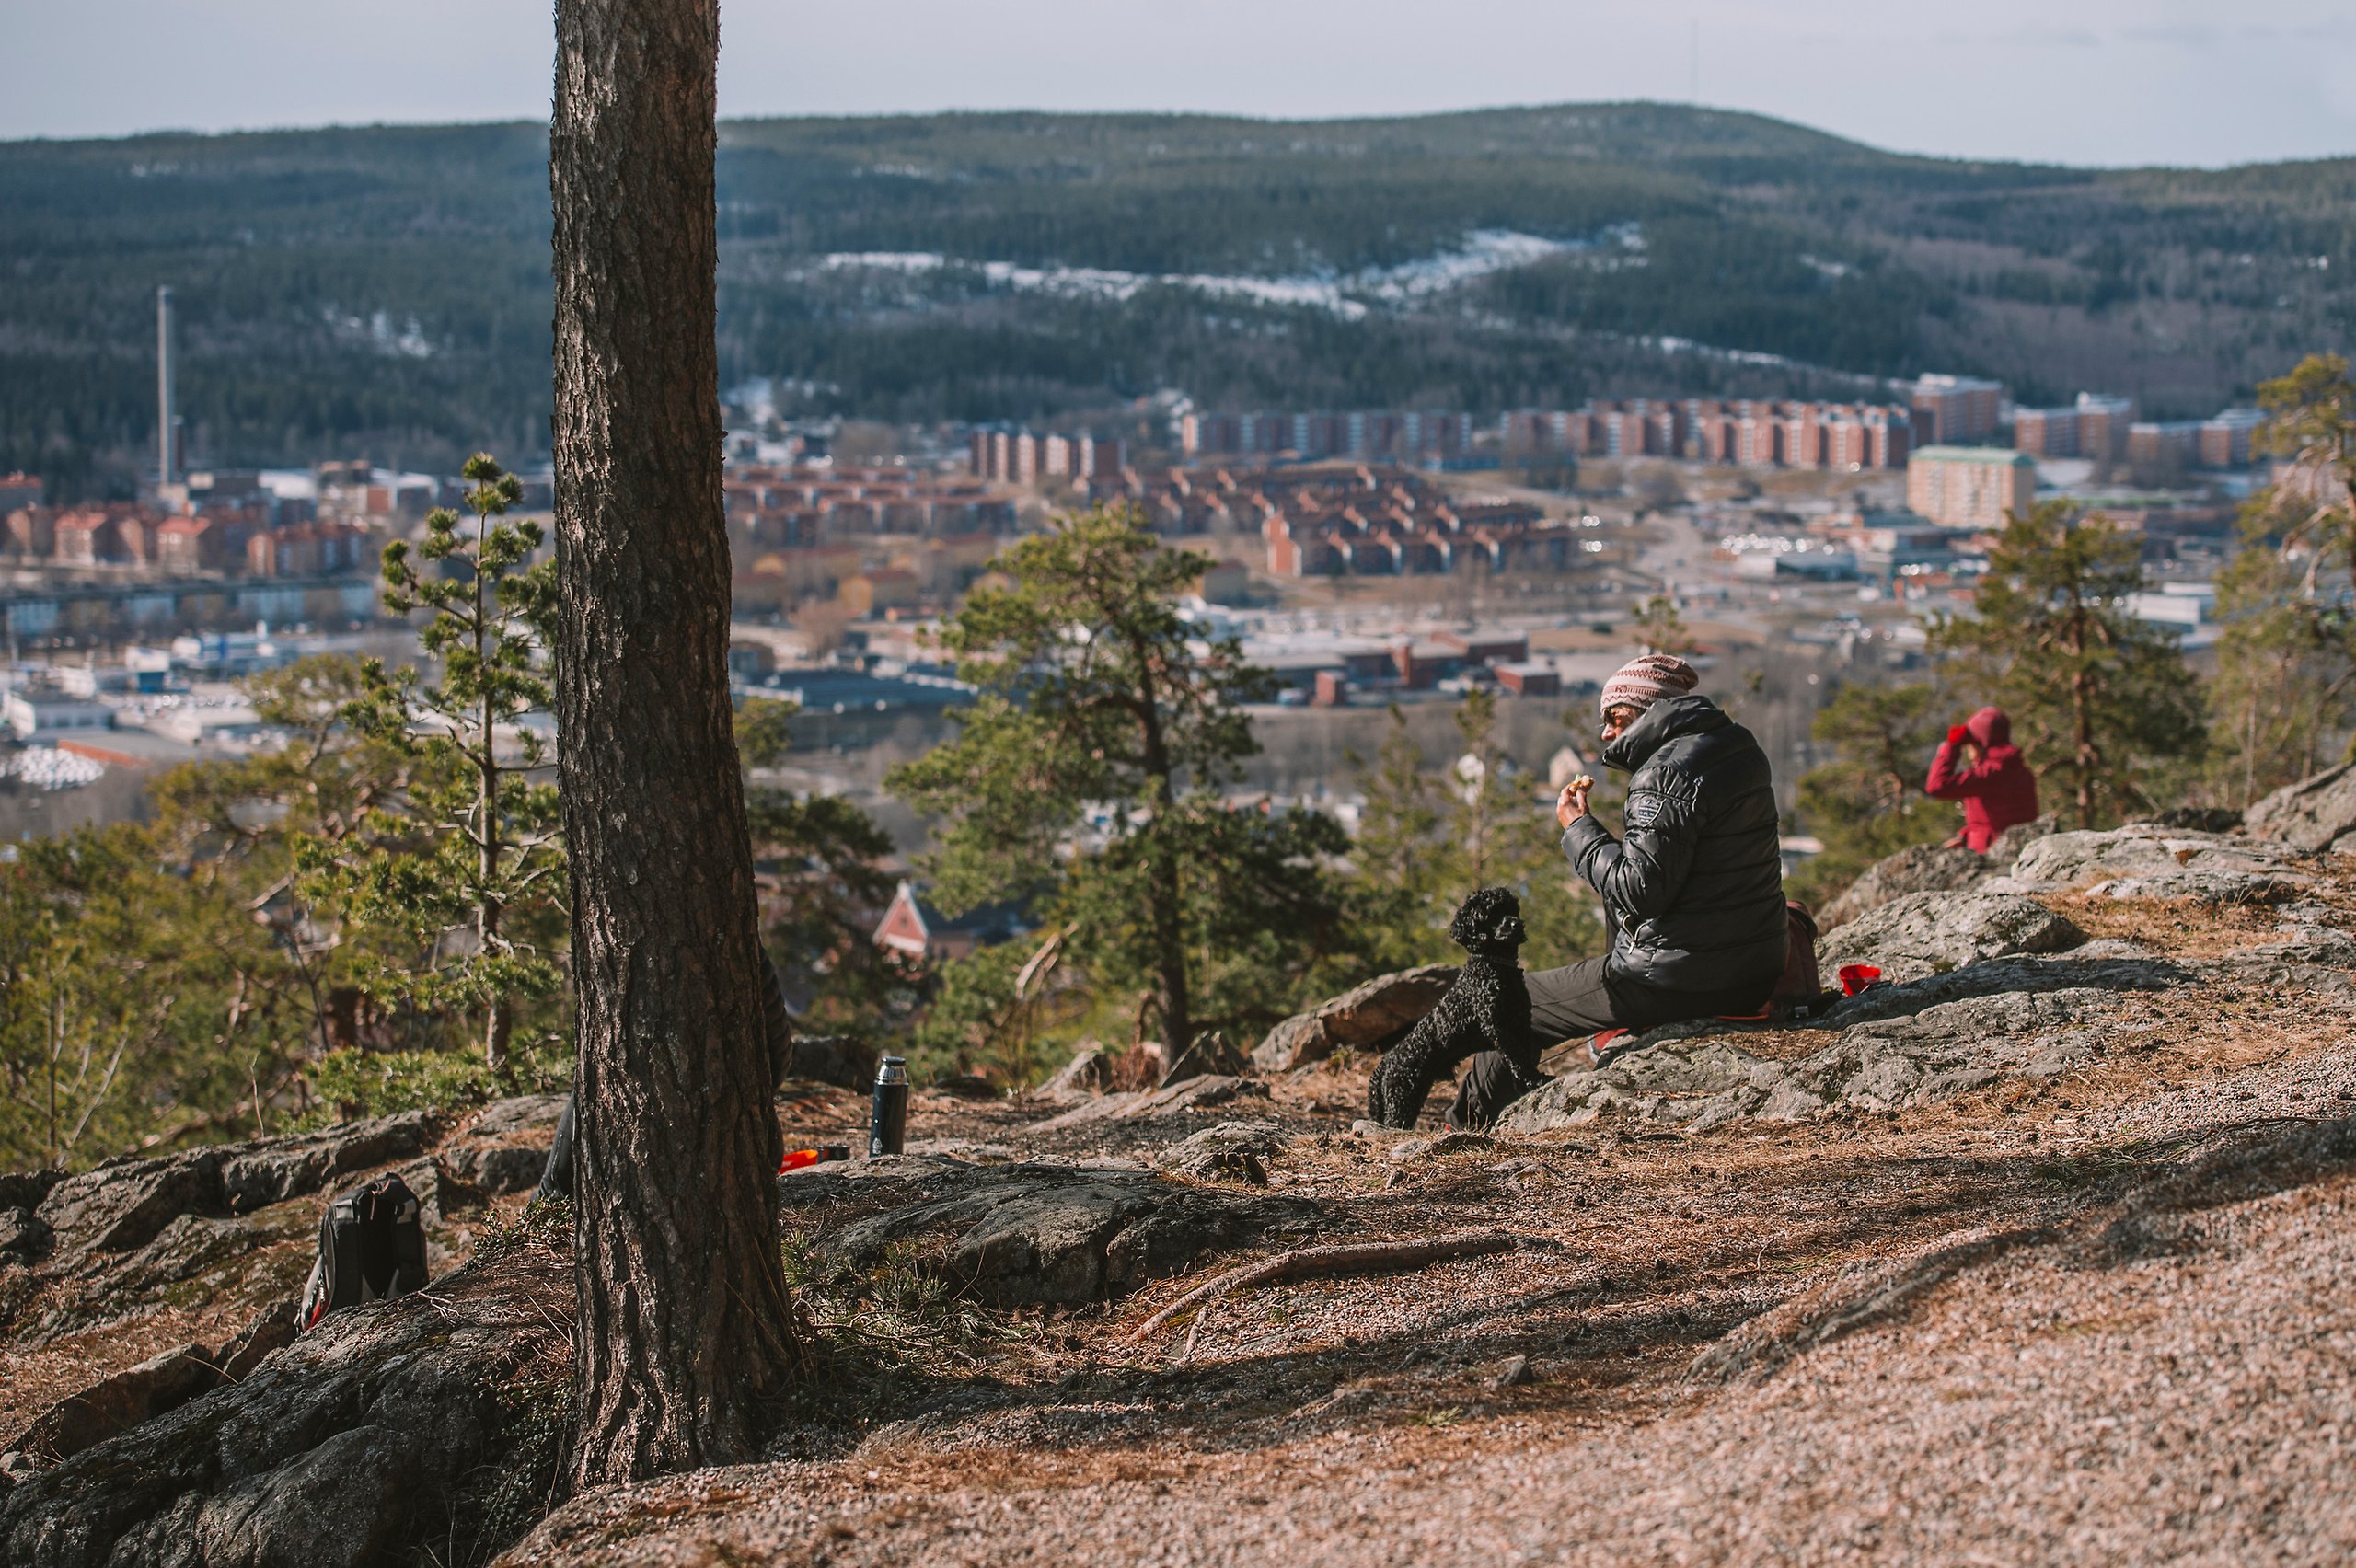 Två personer, en med svart jacka och en med röd jacka sitter på stenarna vid Norra Berget i Sundsvall. De har en svart hund med sig också. Framför dem breder Stenstan ut sig i sin fulla prakt. En fantastisk utsikt över stad, hav, berg och land.